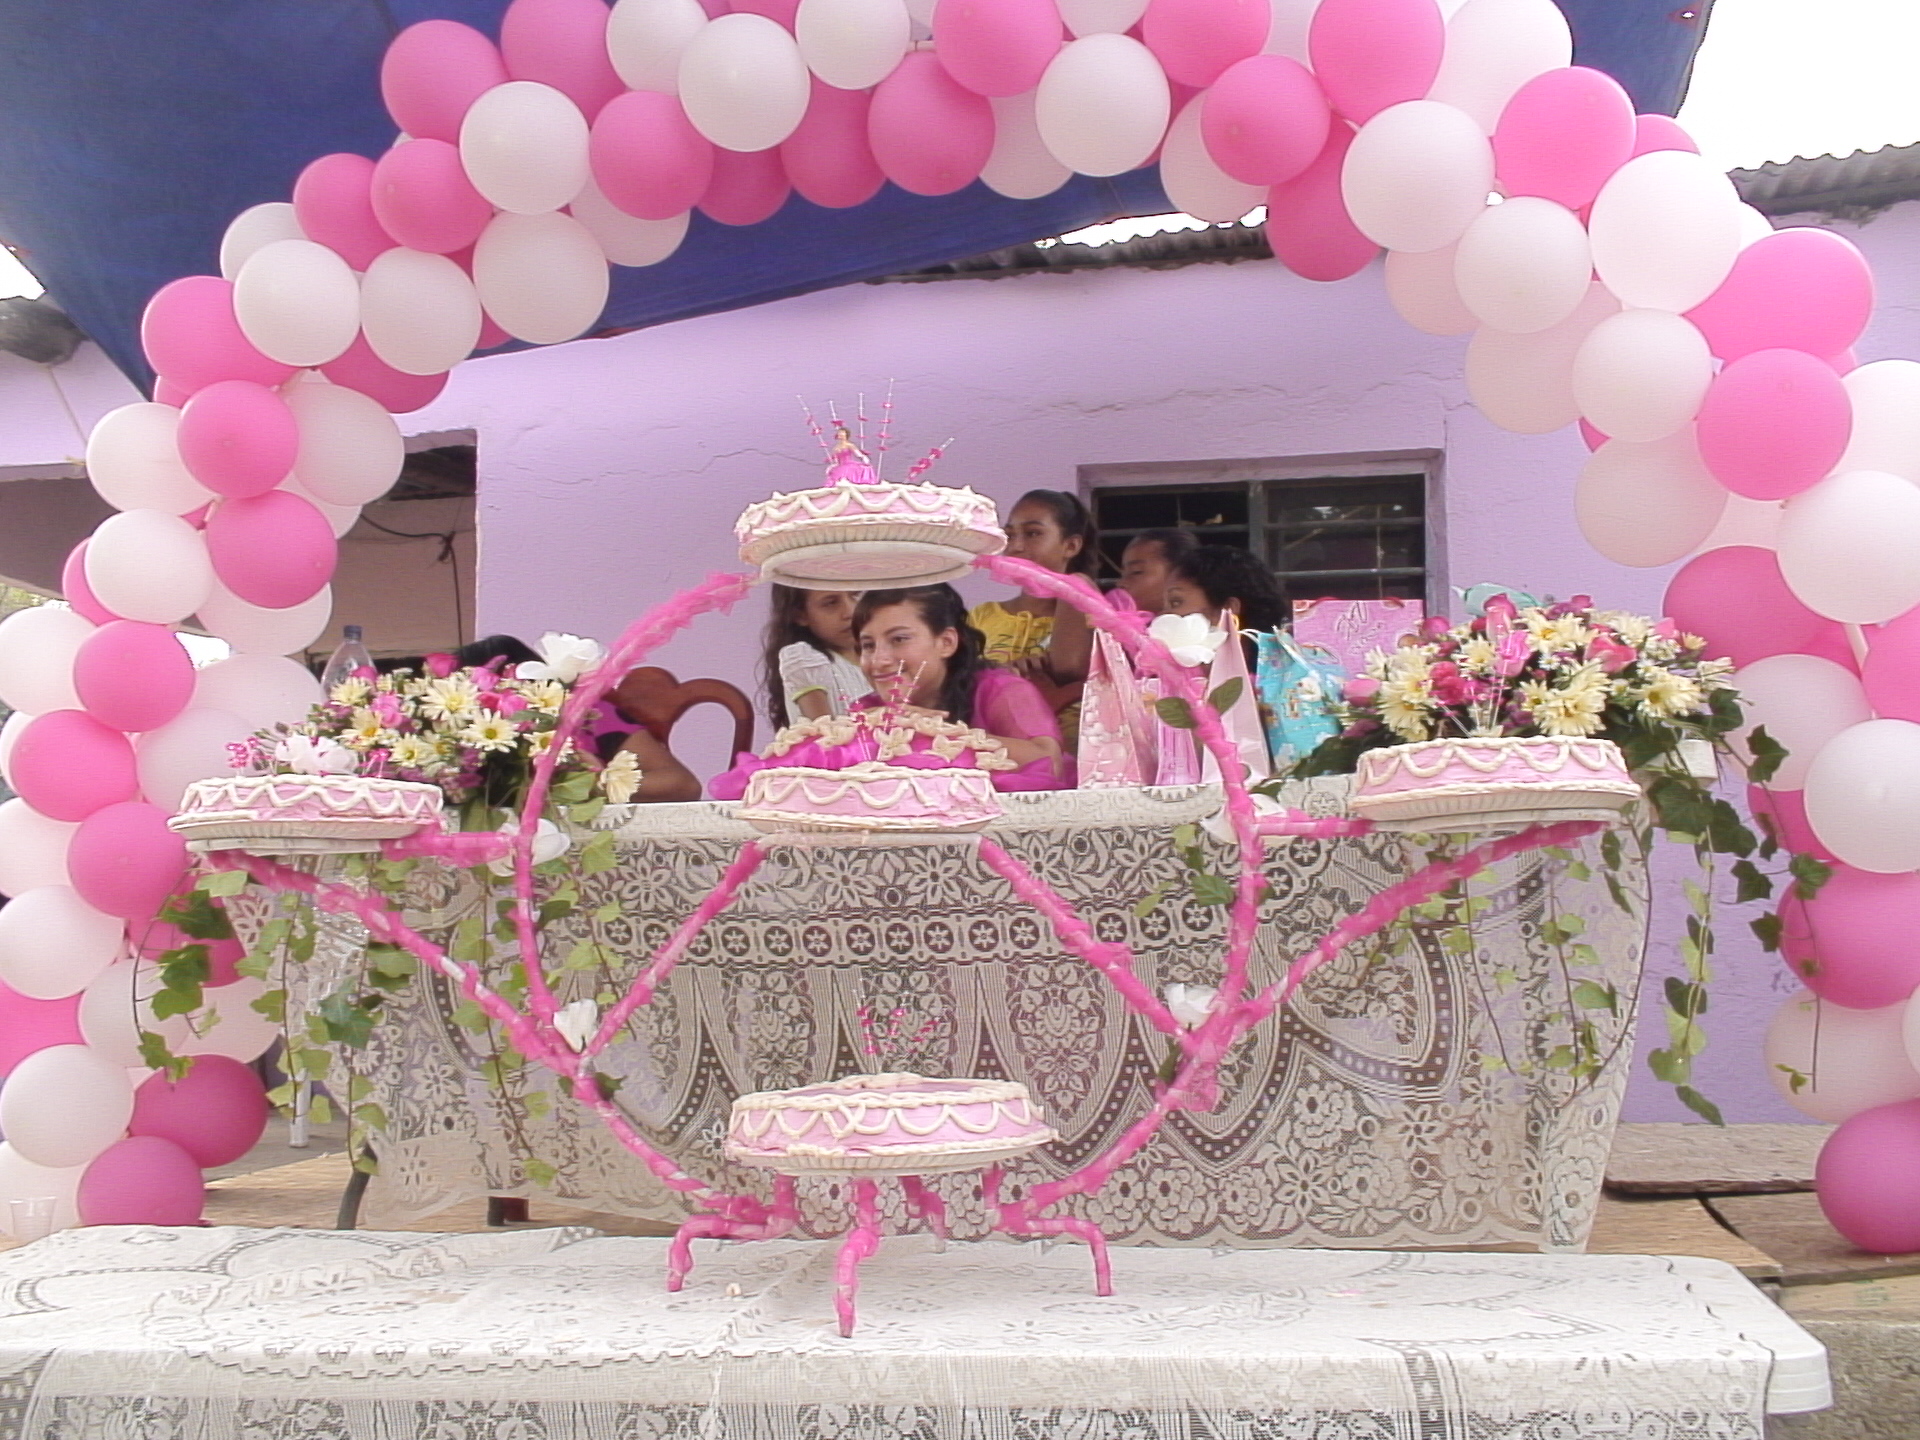 basavanna hd wallpaper,rosa,dekoration,ballon,partyversorgung,die architektur